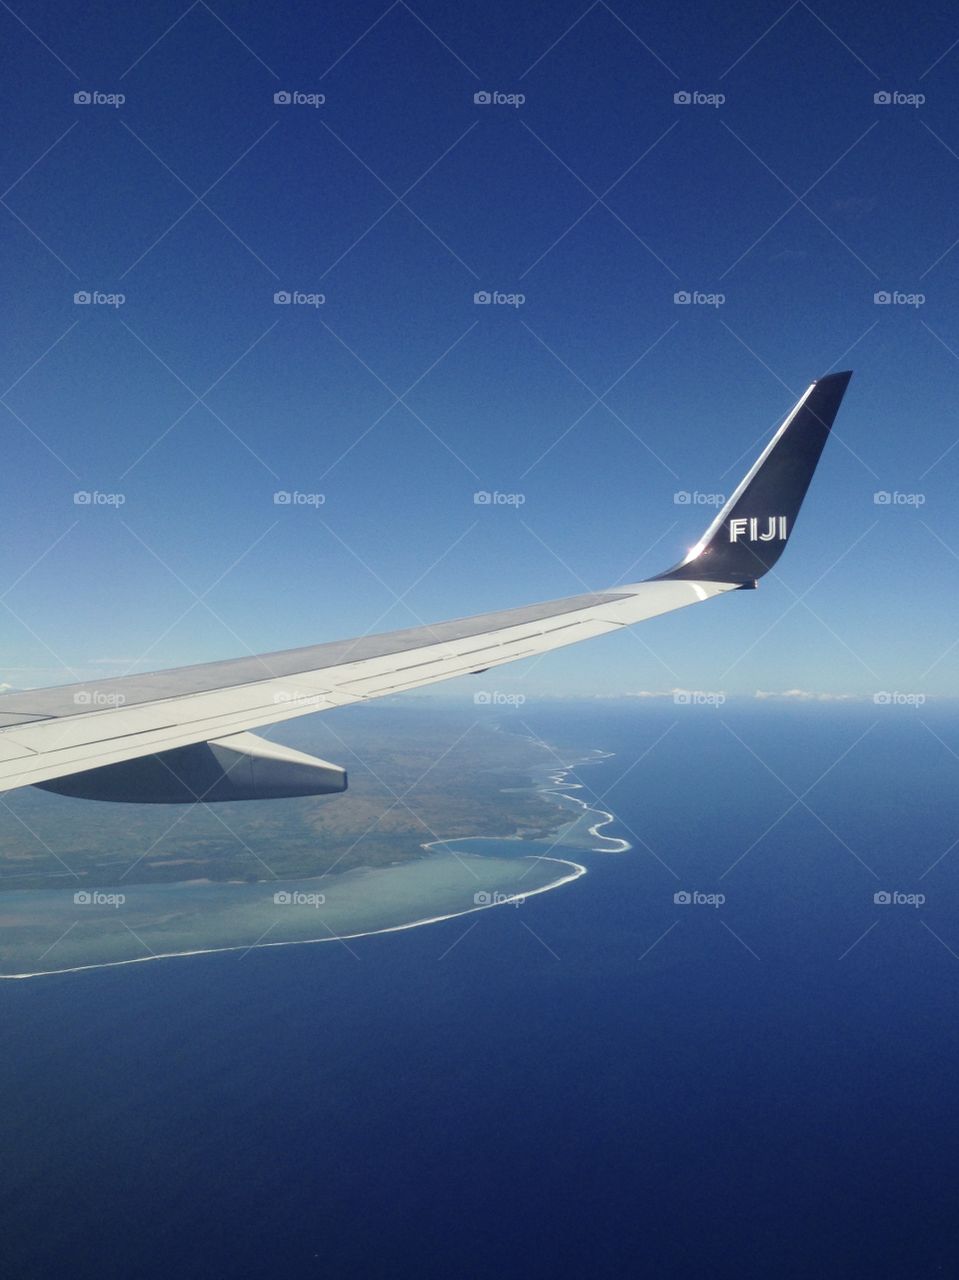 Fijian flight fix